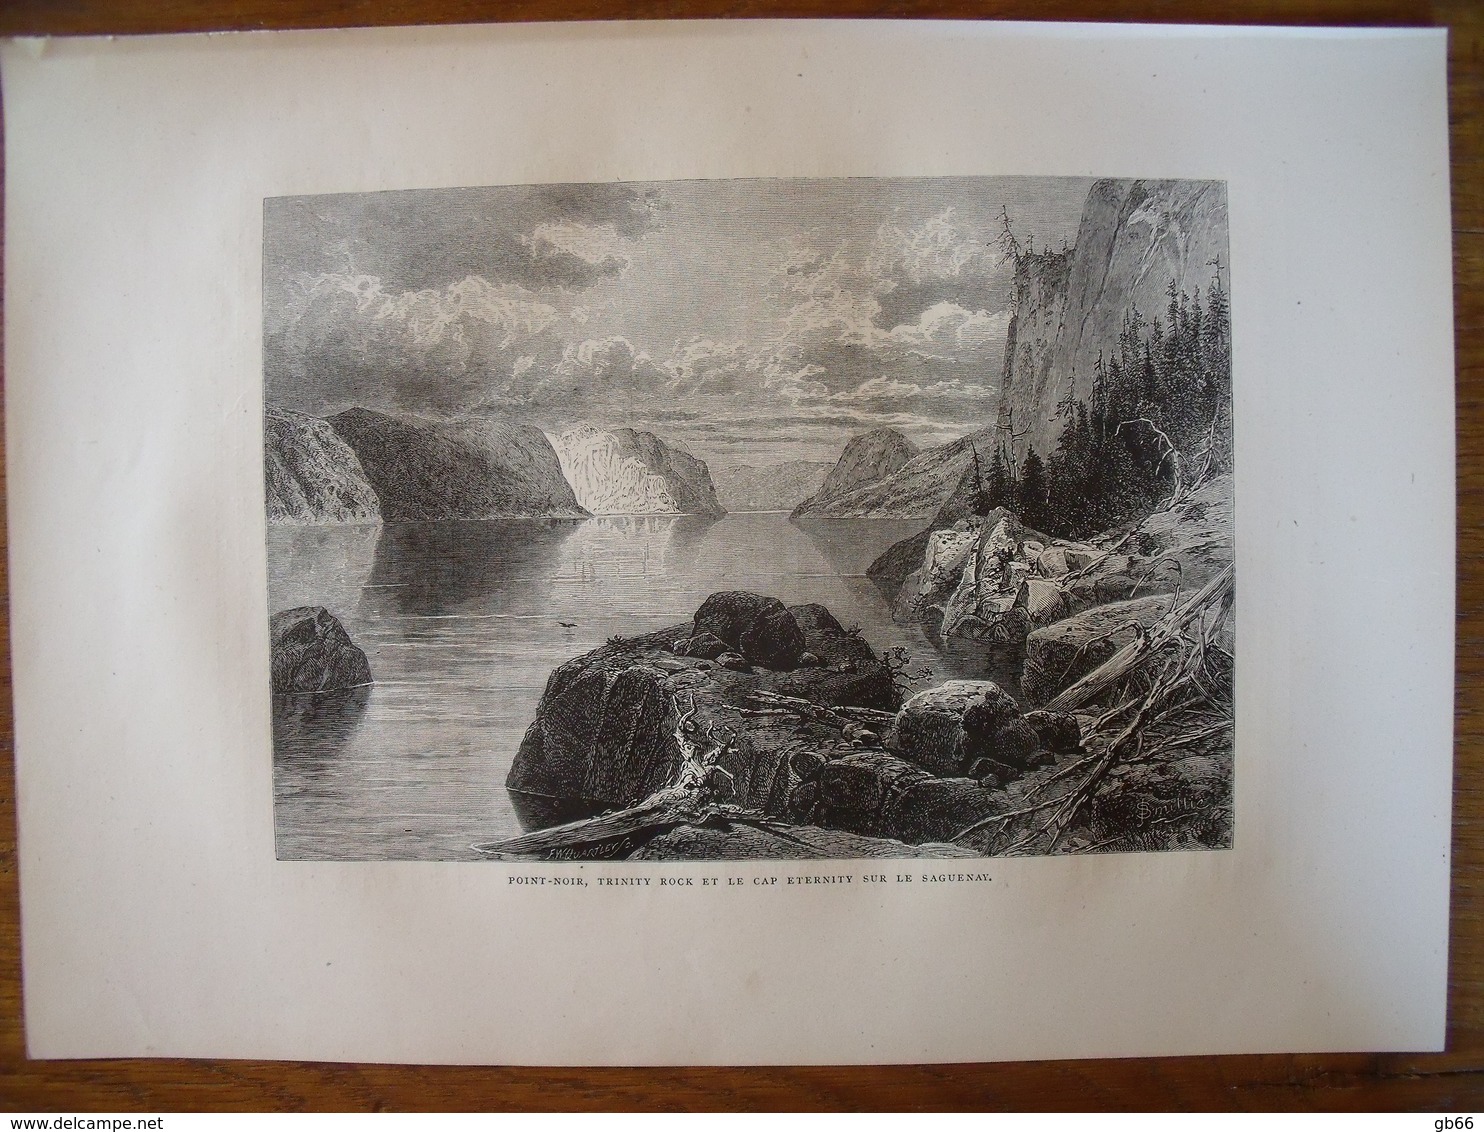 Canada, Point-Noir, Trinity Rock, Cap Eternity, Sur Le Saguenay   Gravure    1880 - Sammlungen